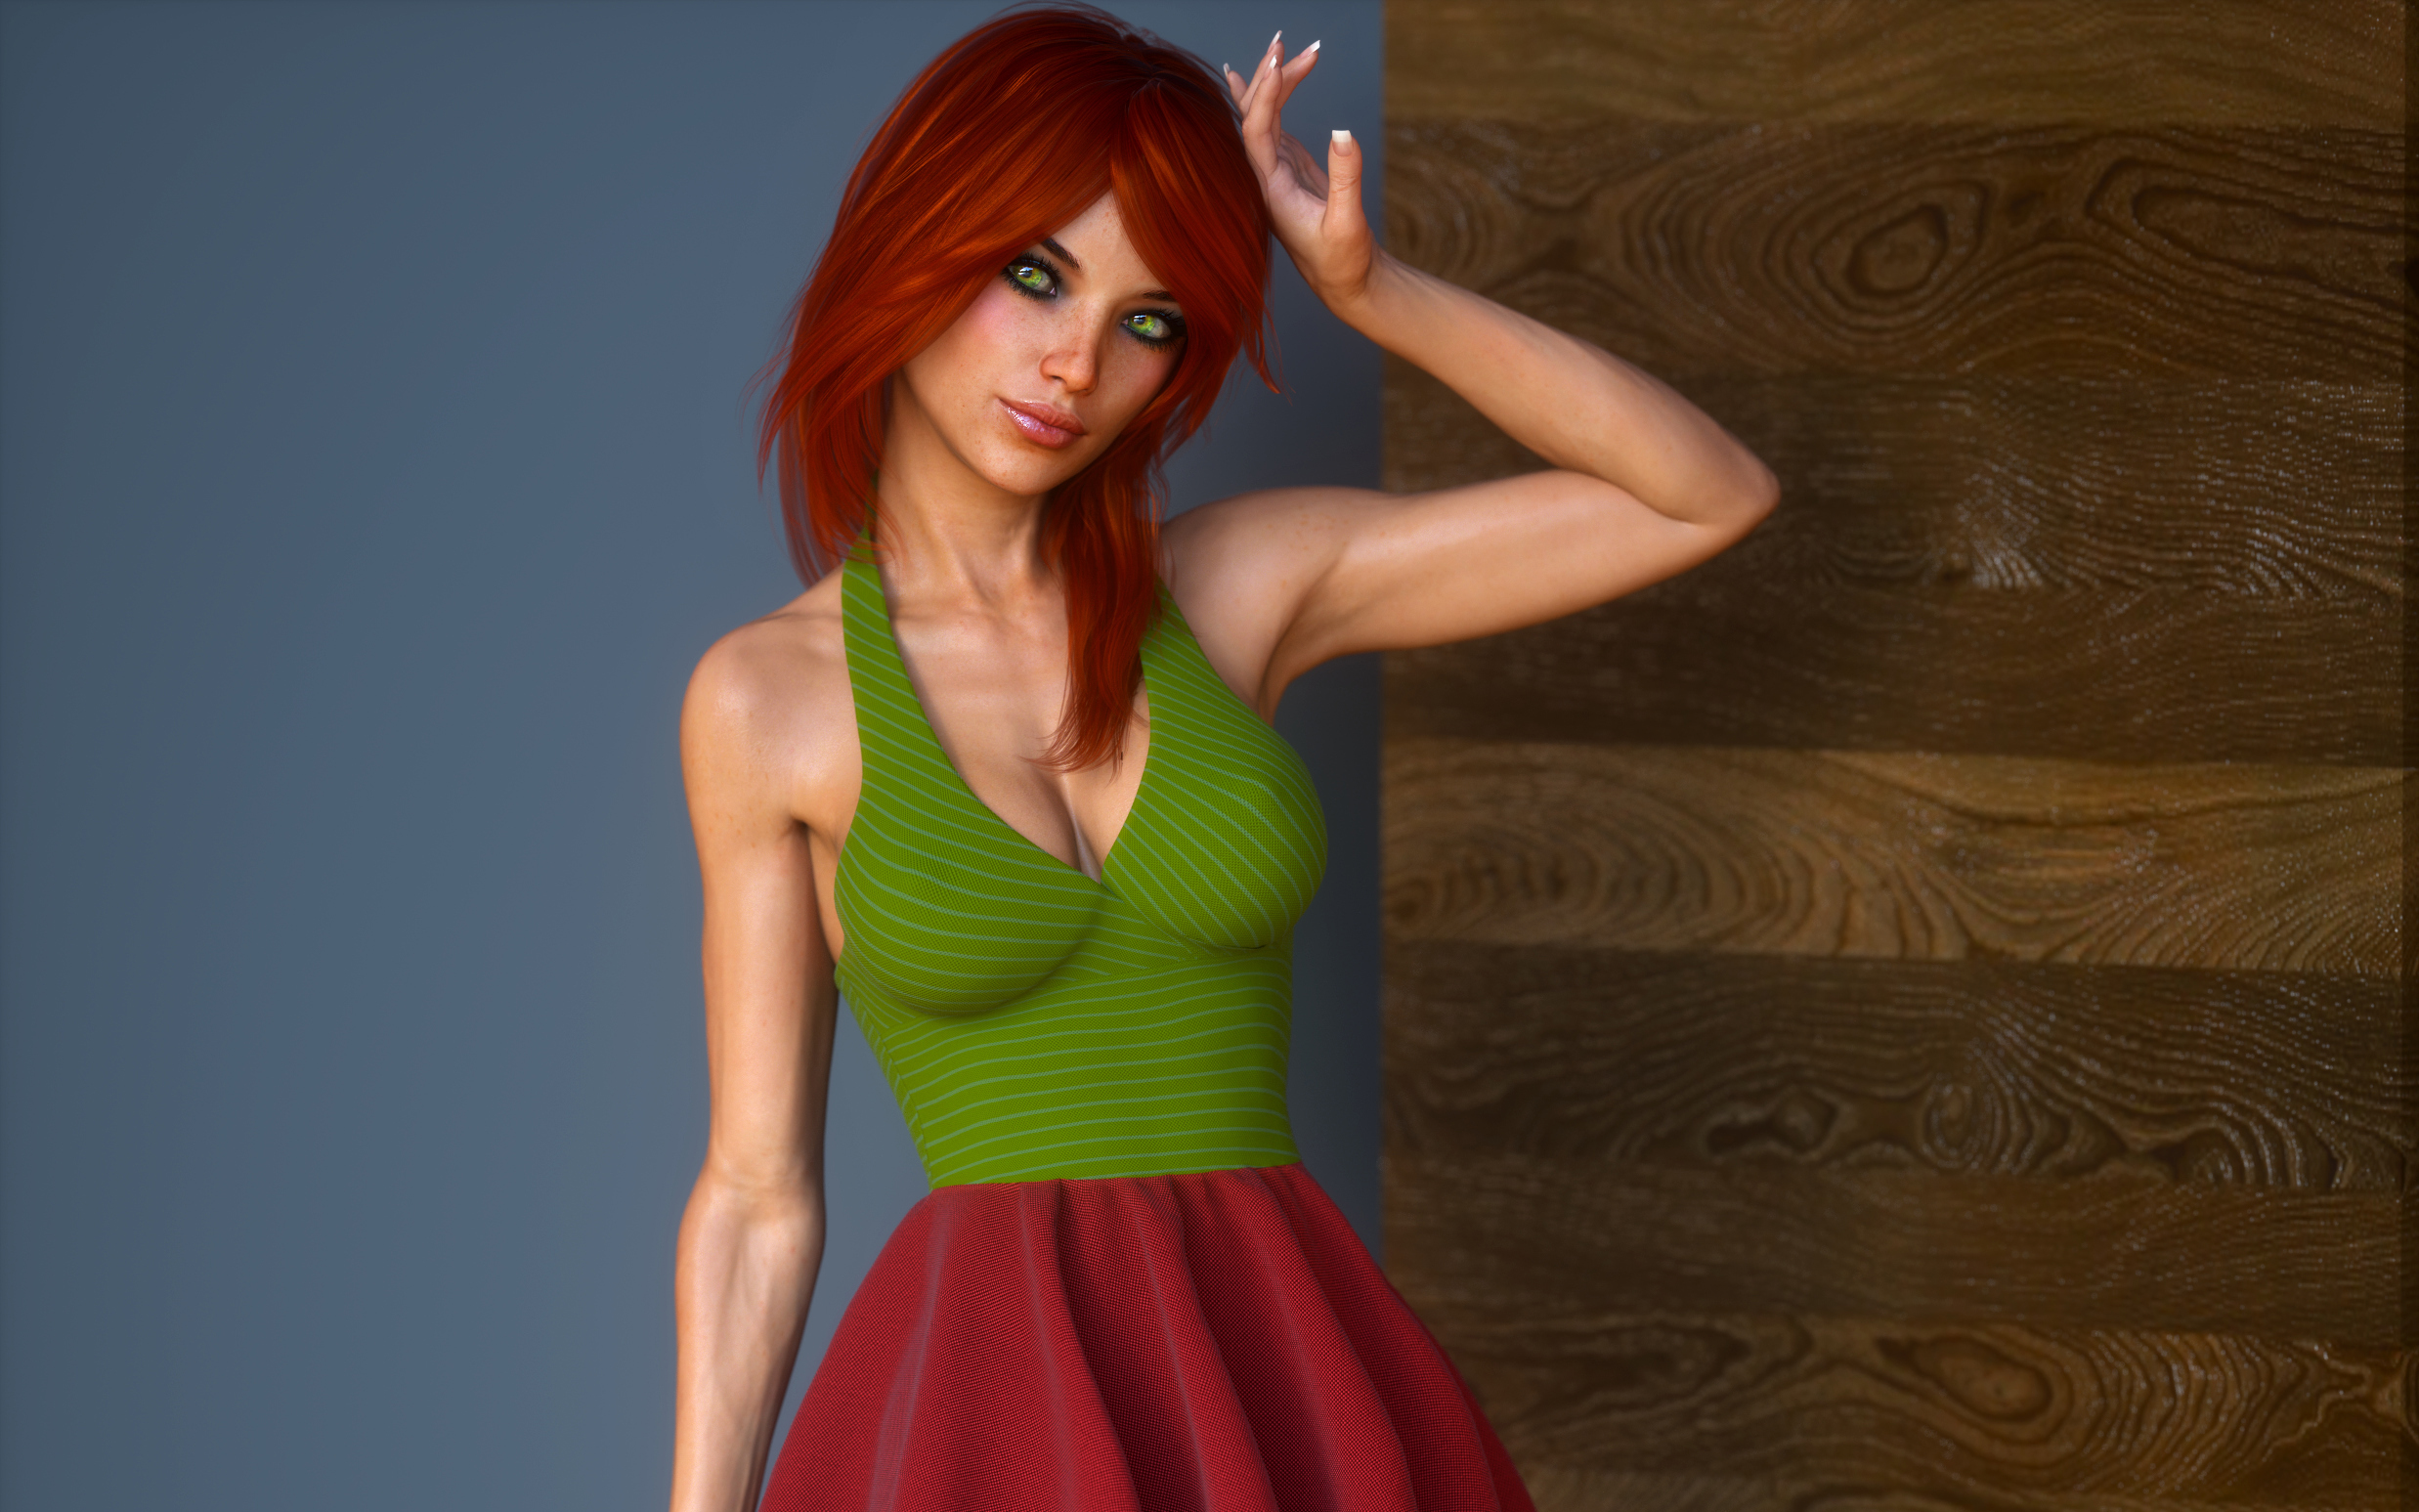 Hot 3D Girl 3d girl  hot red dress HD wallpaper  Pxfuel